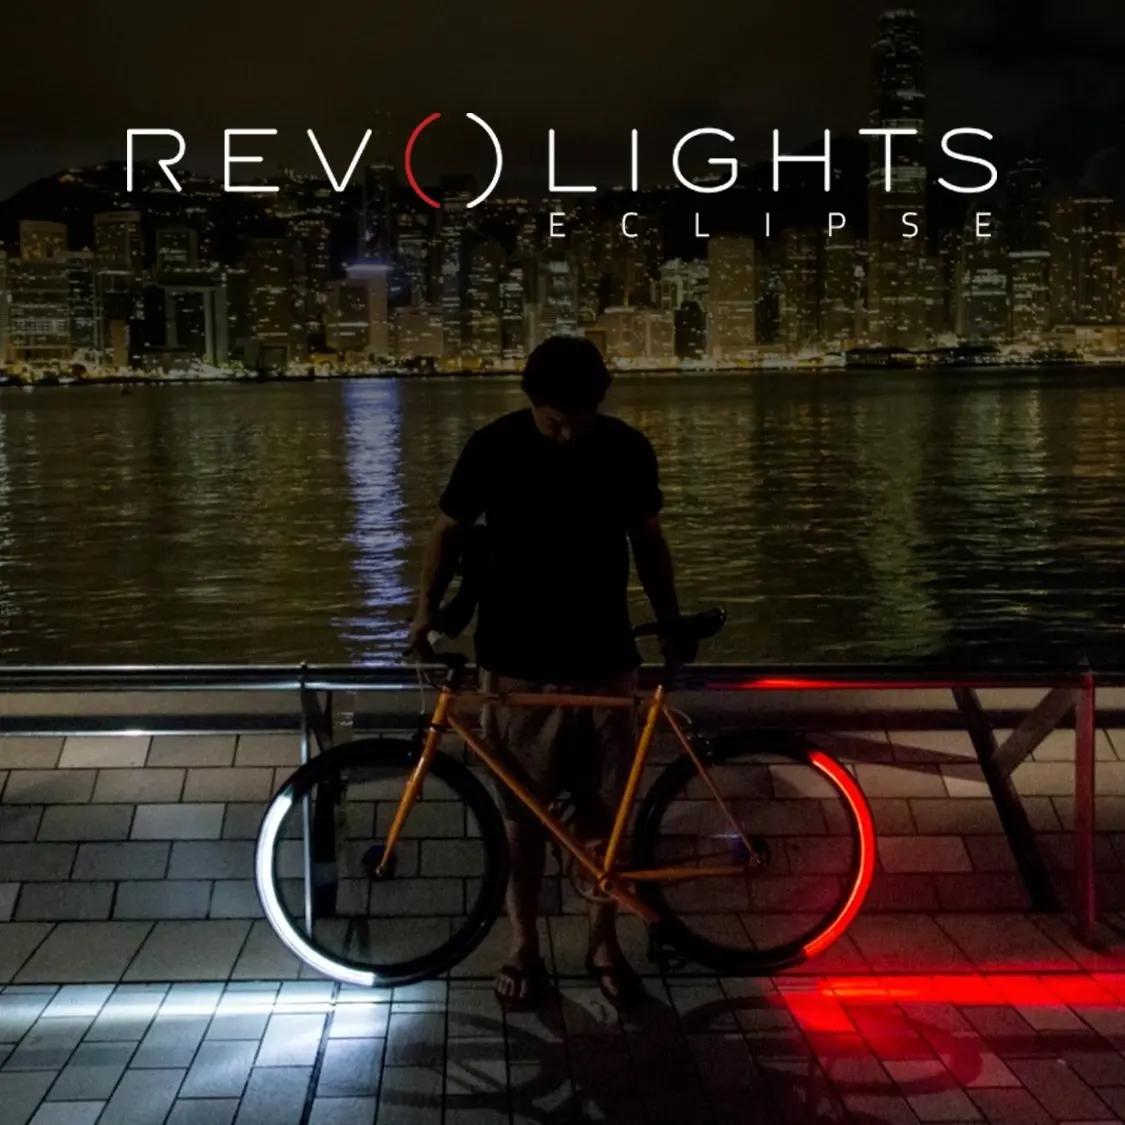 revolights bike